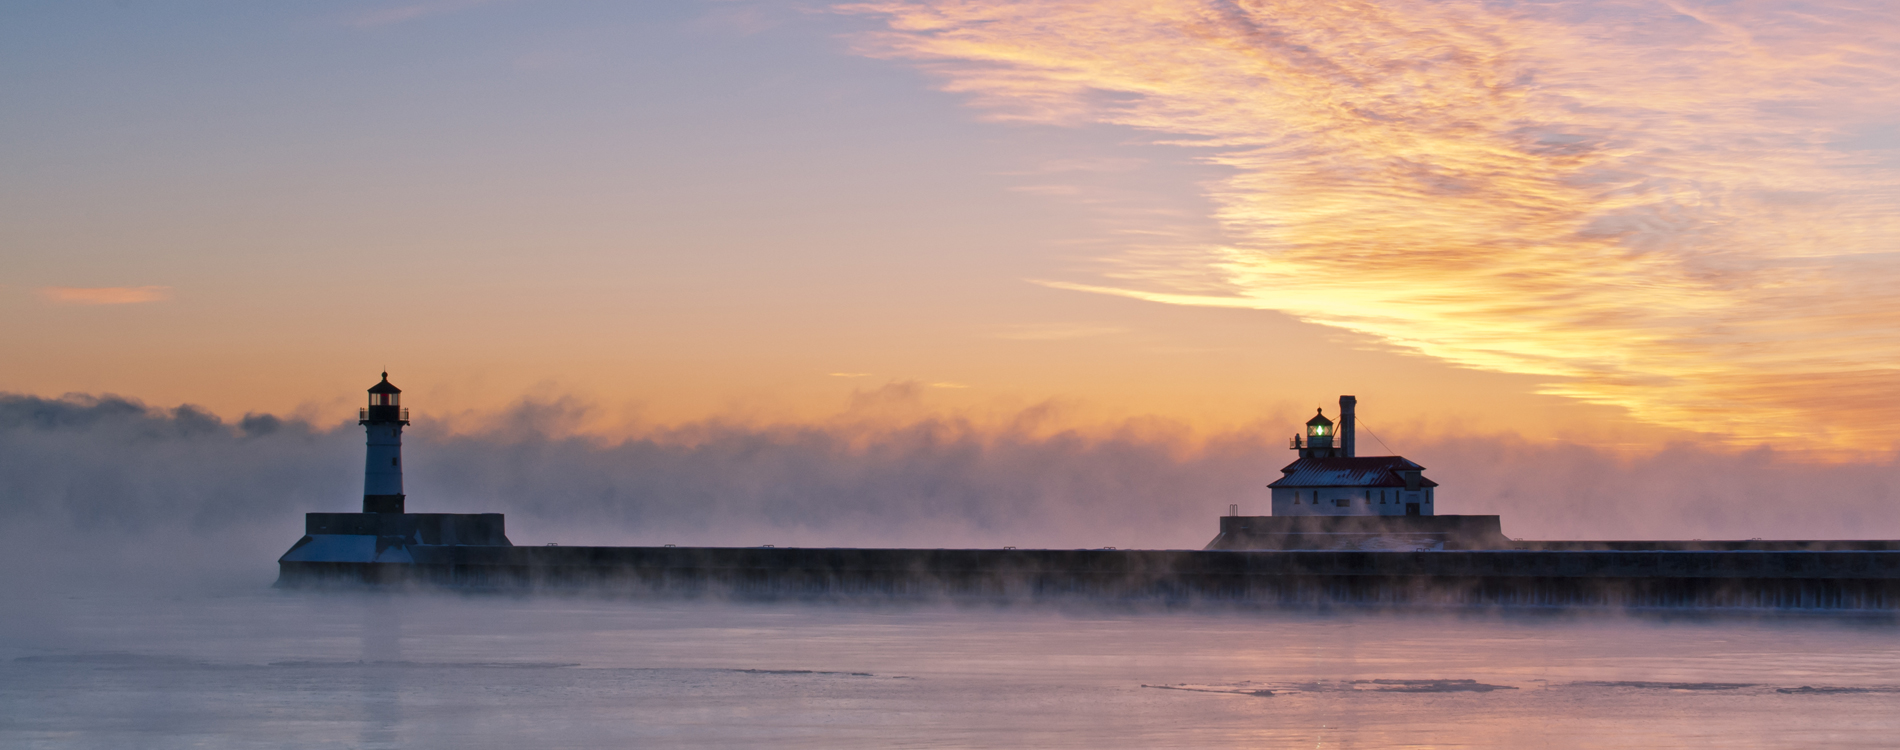 Duluth, MN - Foggy Sunrise on Lake Superior